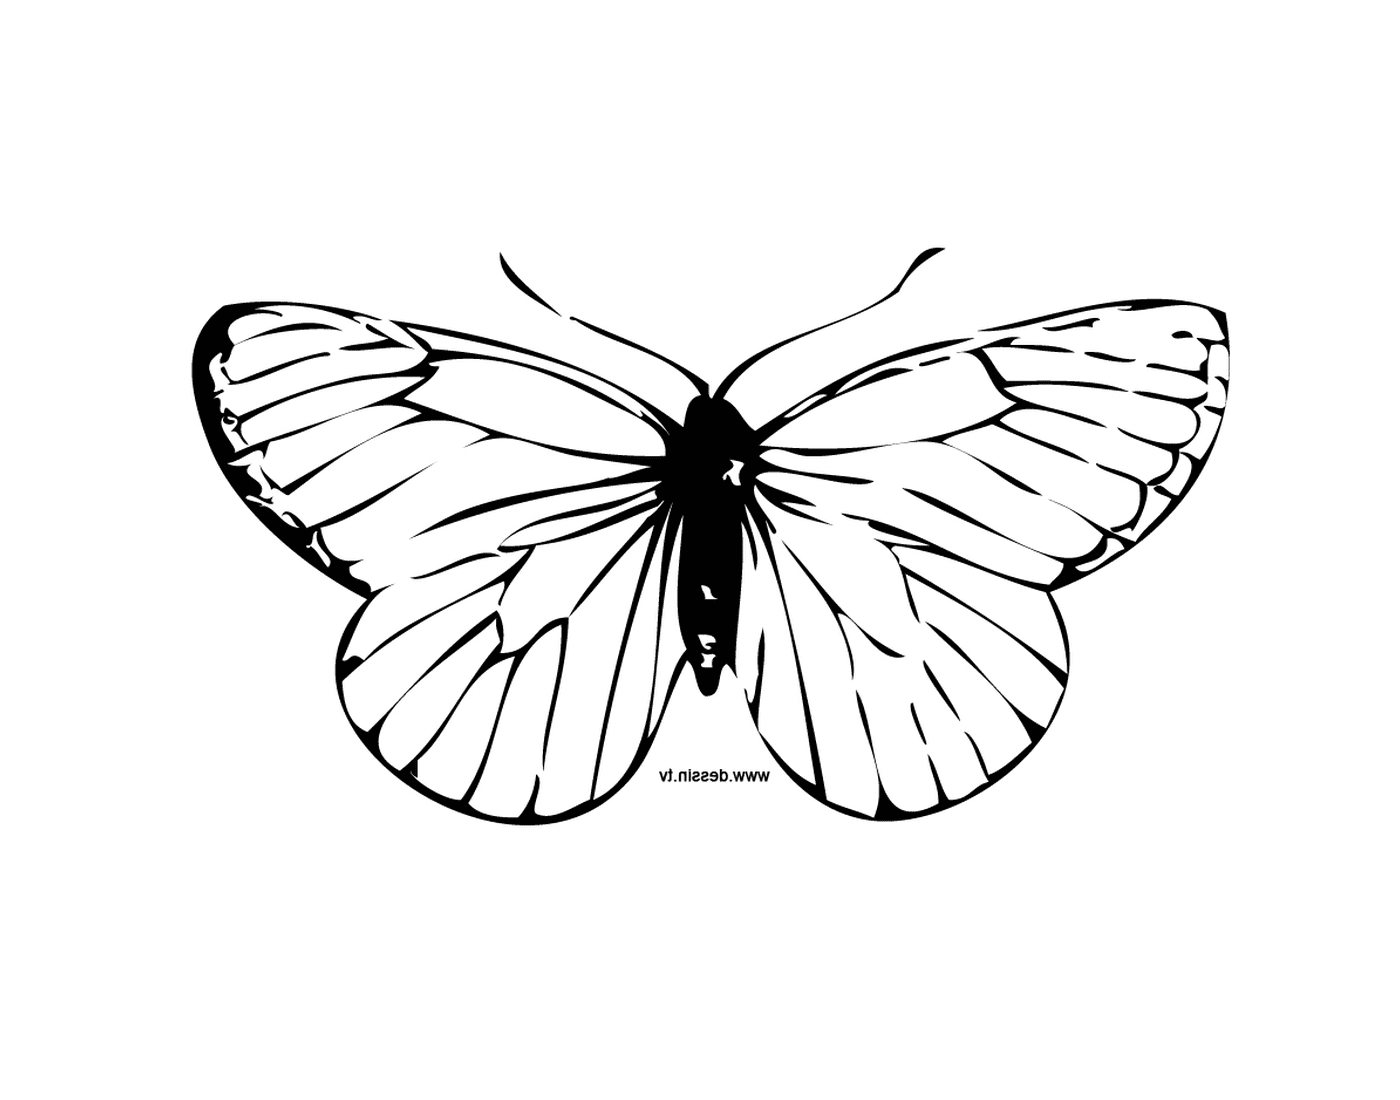  Очаровательная бабочка с уникальными мотивами 